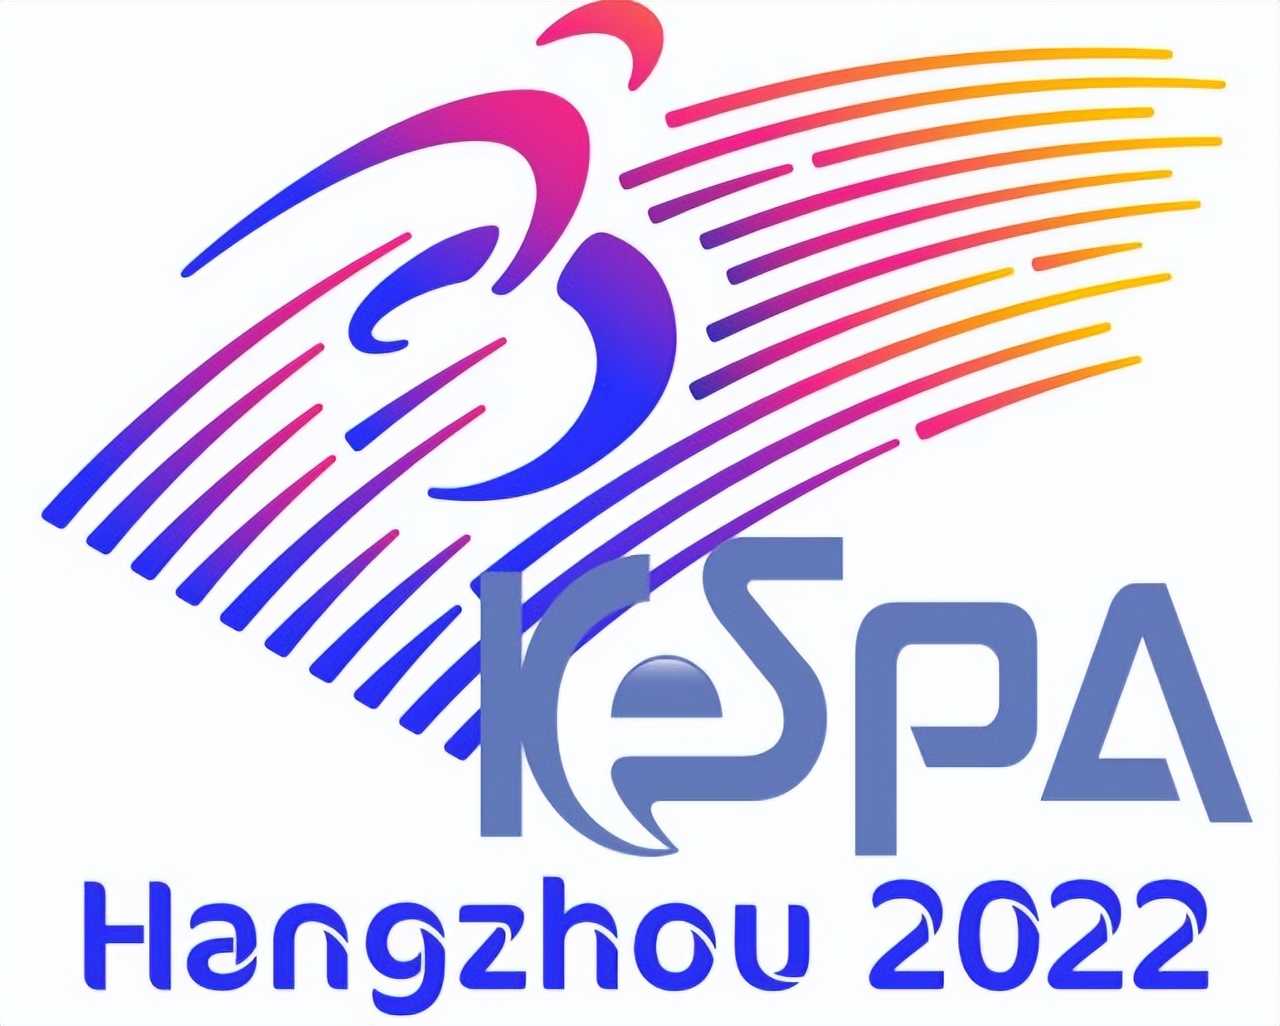 英雄联盟：韩国代表队评价赛事件回顾 KeSPA为巩固地位诞生的丑闻